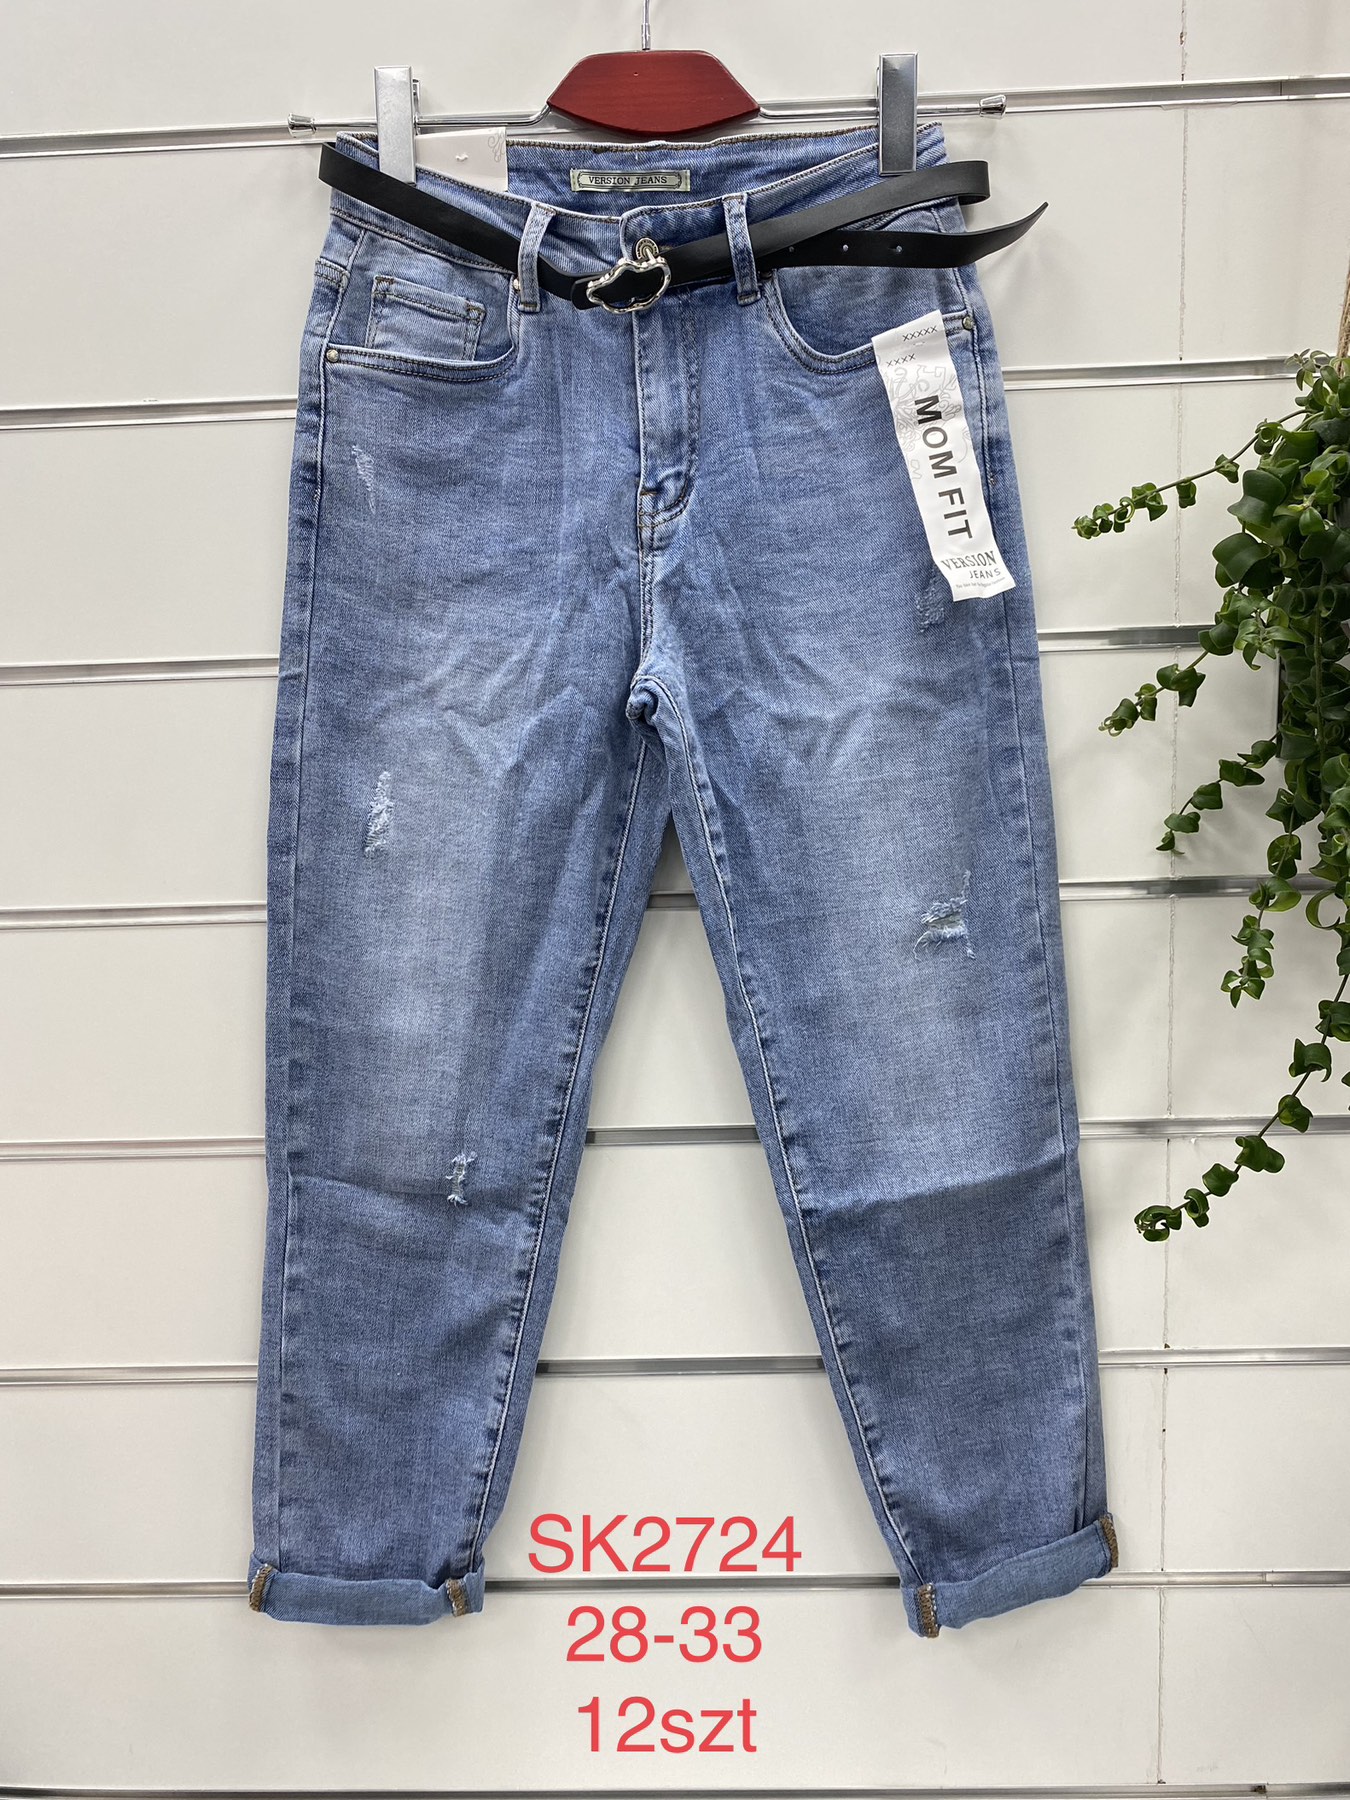 Spodnie damskie jeans Roz  28-33.  1 kolor . Paczka 12szt